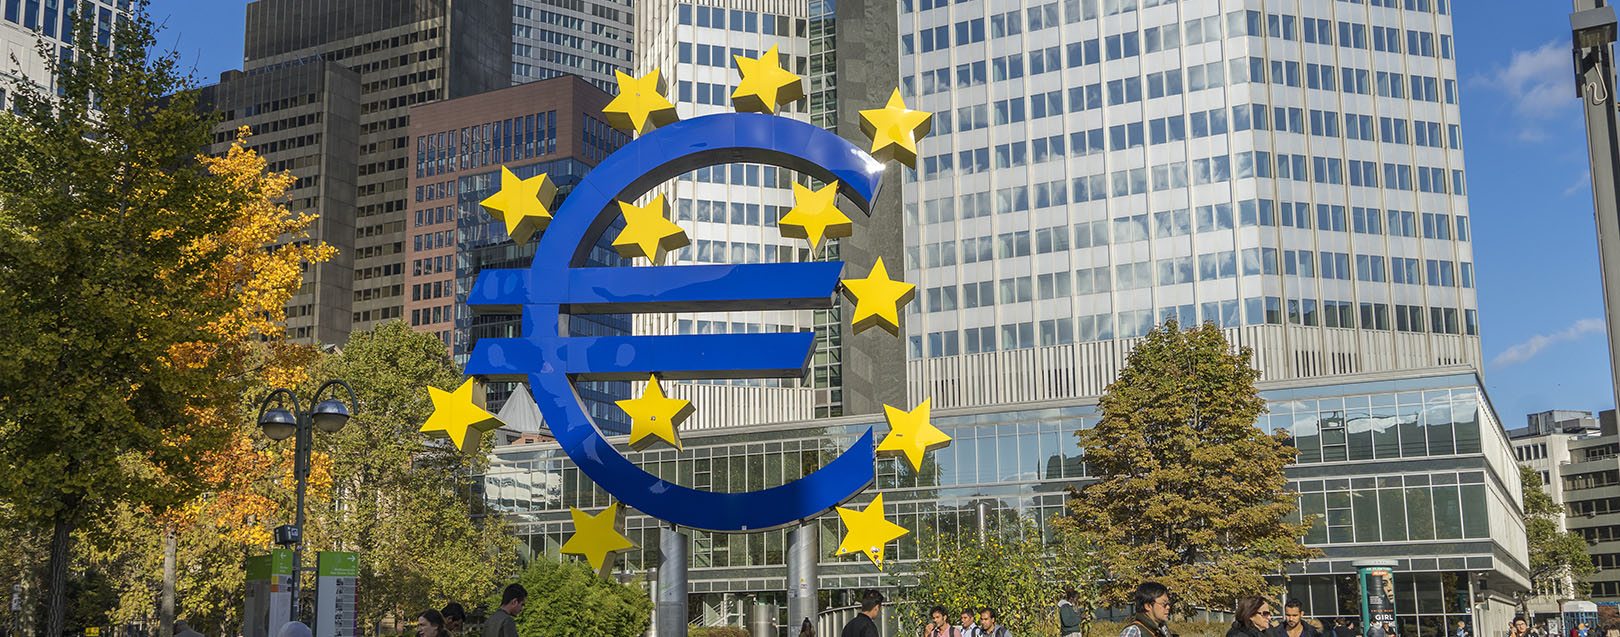 Eurozone economy indicators largely positive in 2017